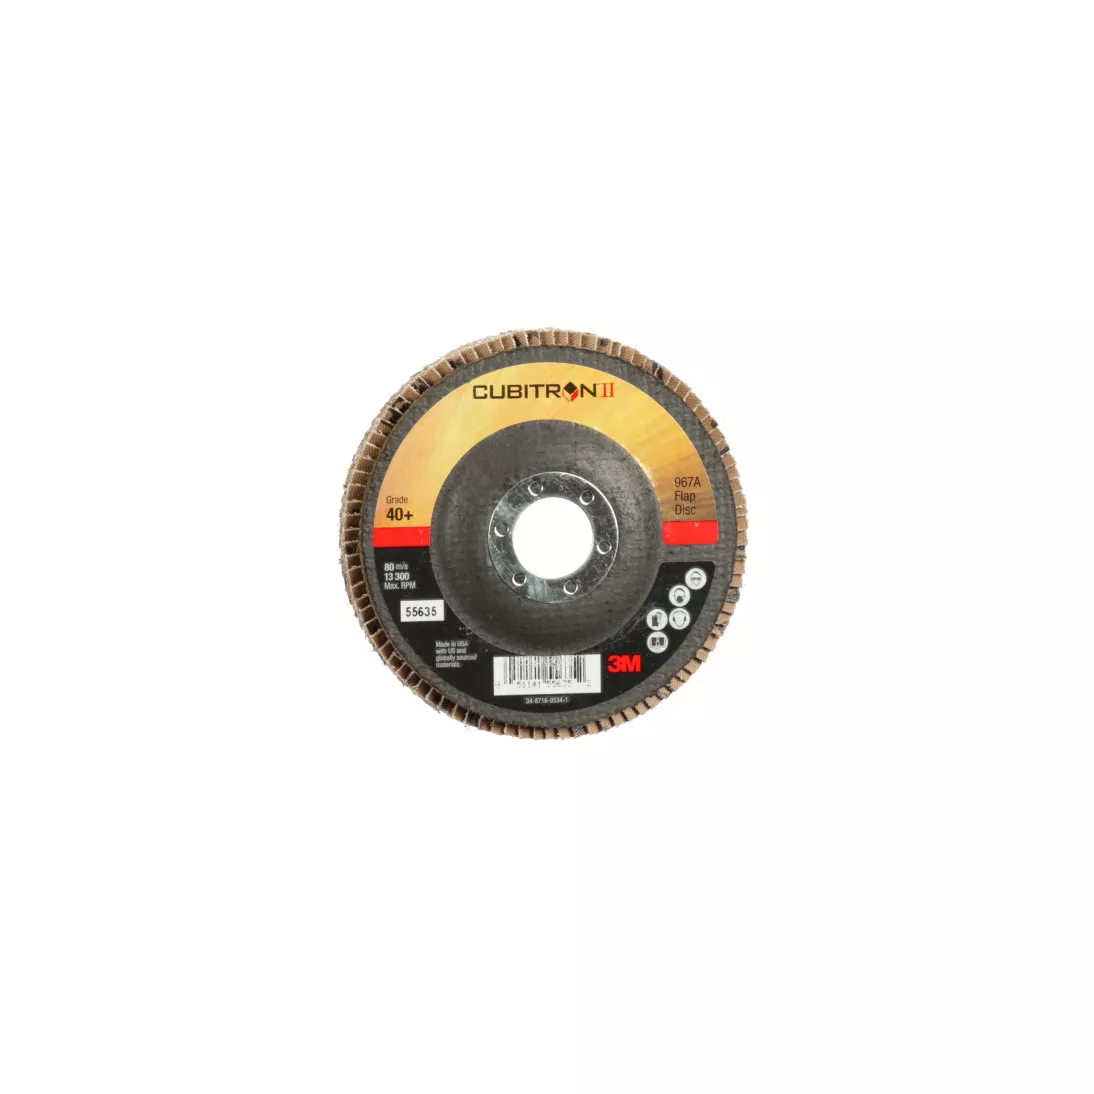 3M™ Cubitron™ II Flap Disc 967A, 40+, T27, 4-1/2 in x 7/8 in, Giant, 10
ea/Case